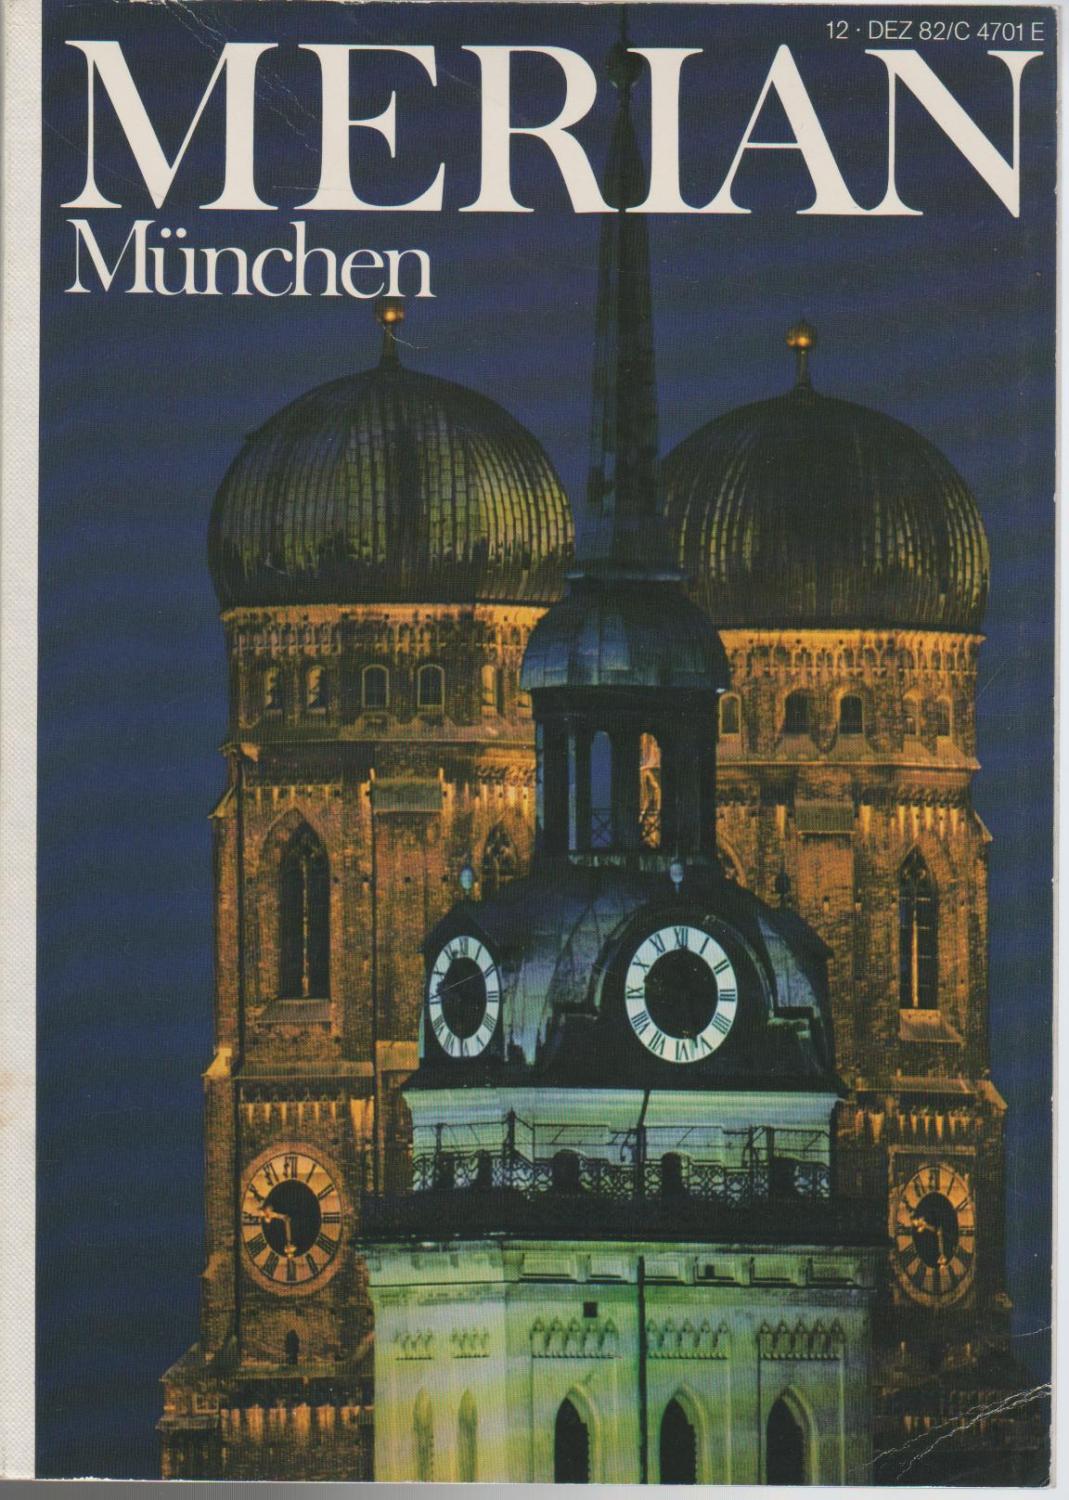 Merian München (5880 653)